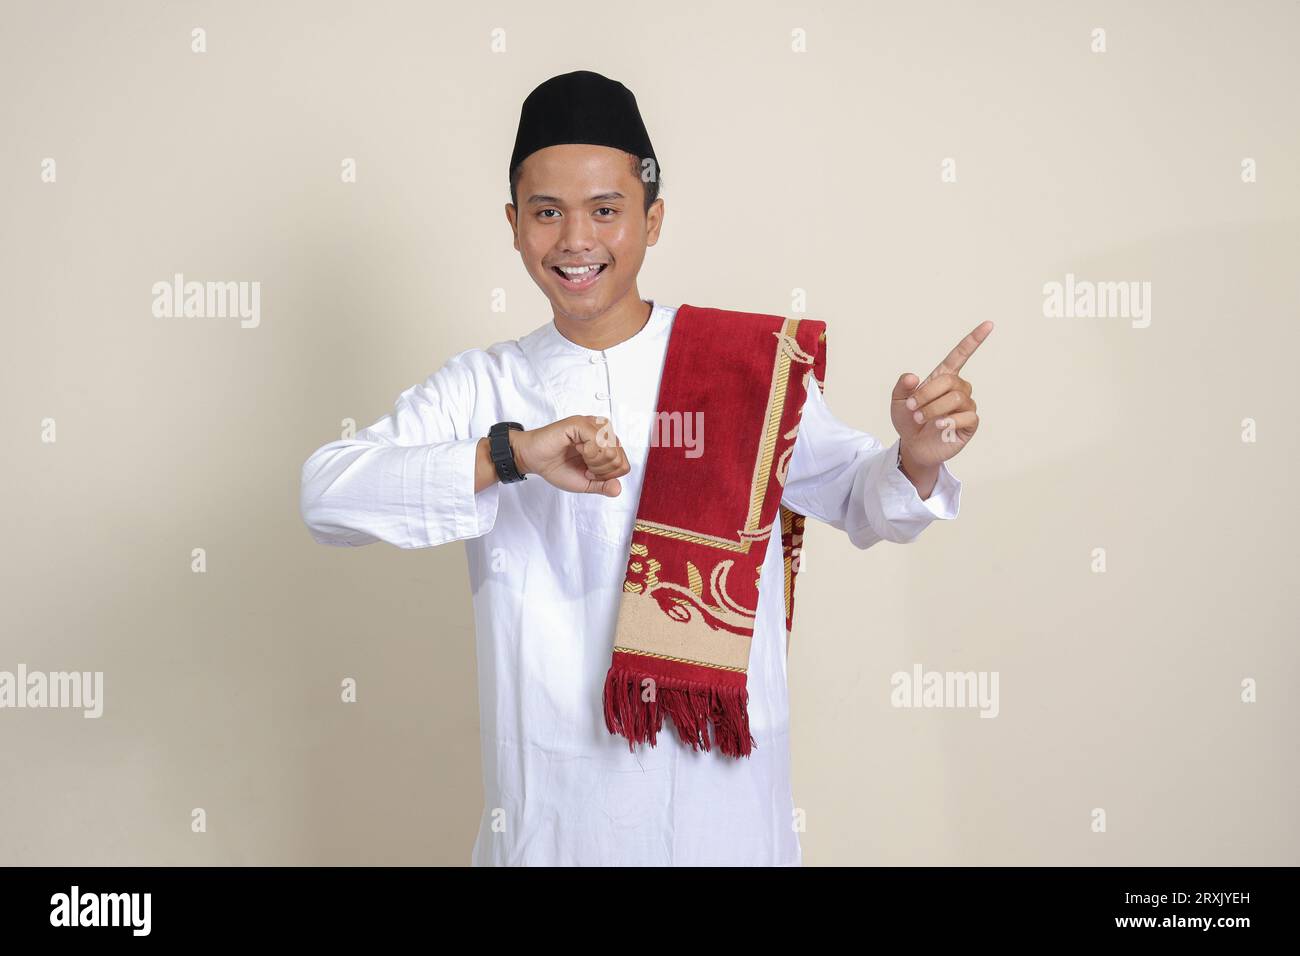 Ritratto di un attraente uomo musulmano asiatico in camicia bianca che guarda l'orologio da polso whille che punta con il dito. Immagine isolata su sfondo grigio Foto Stock